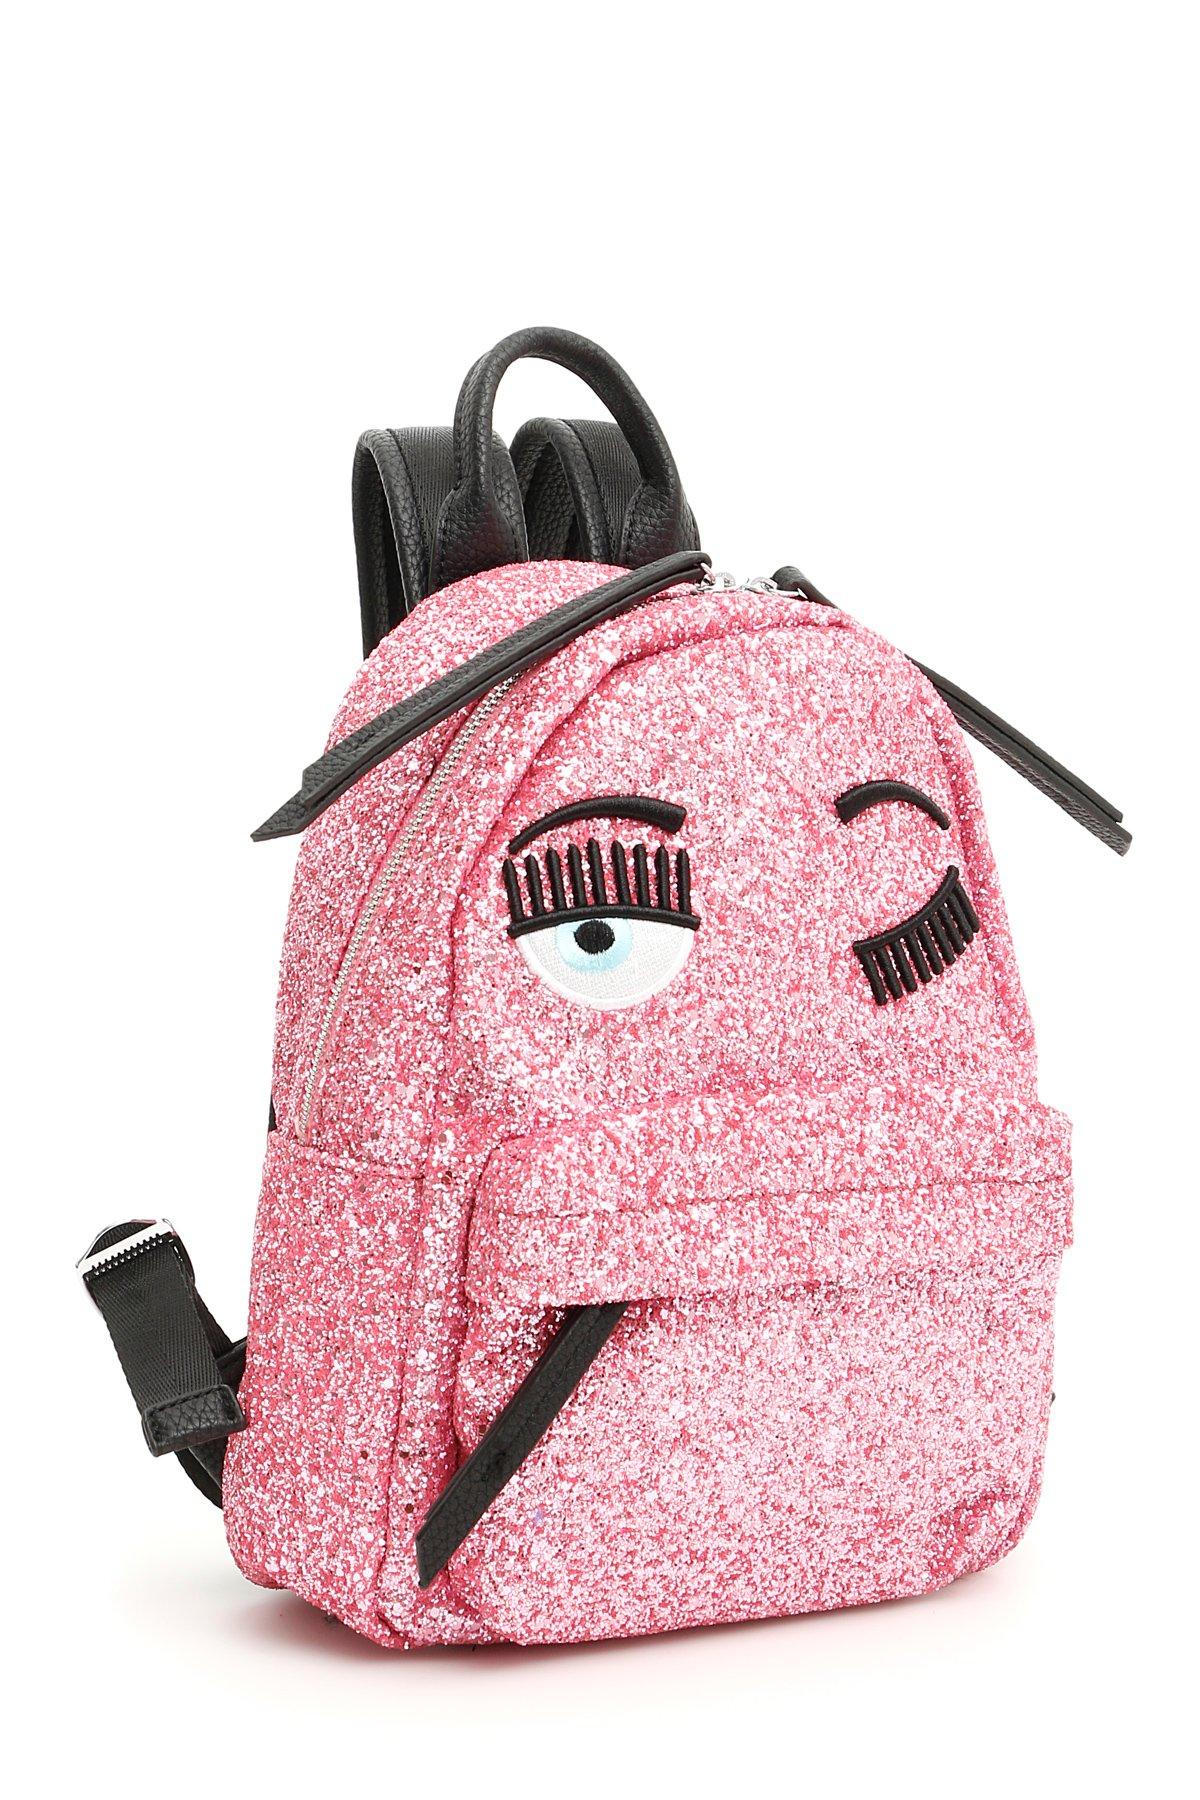 Chiara Ferragni Leather Wink Glitter Backpack in Pink - Lyst